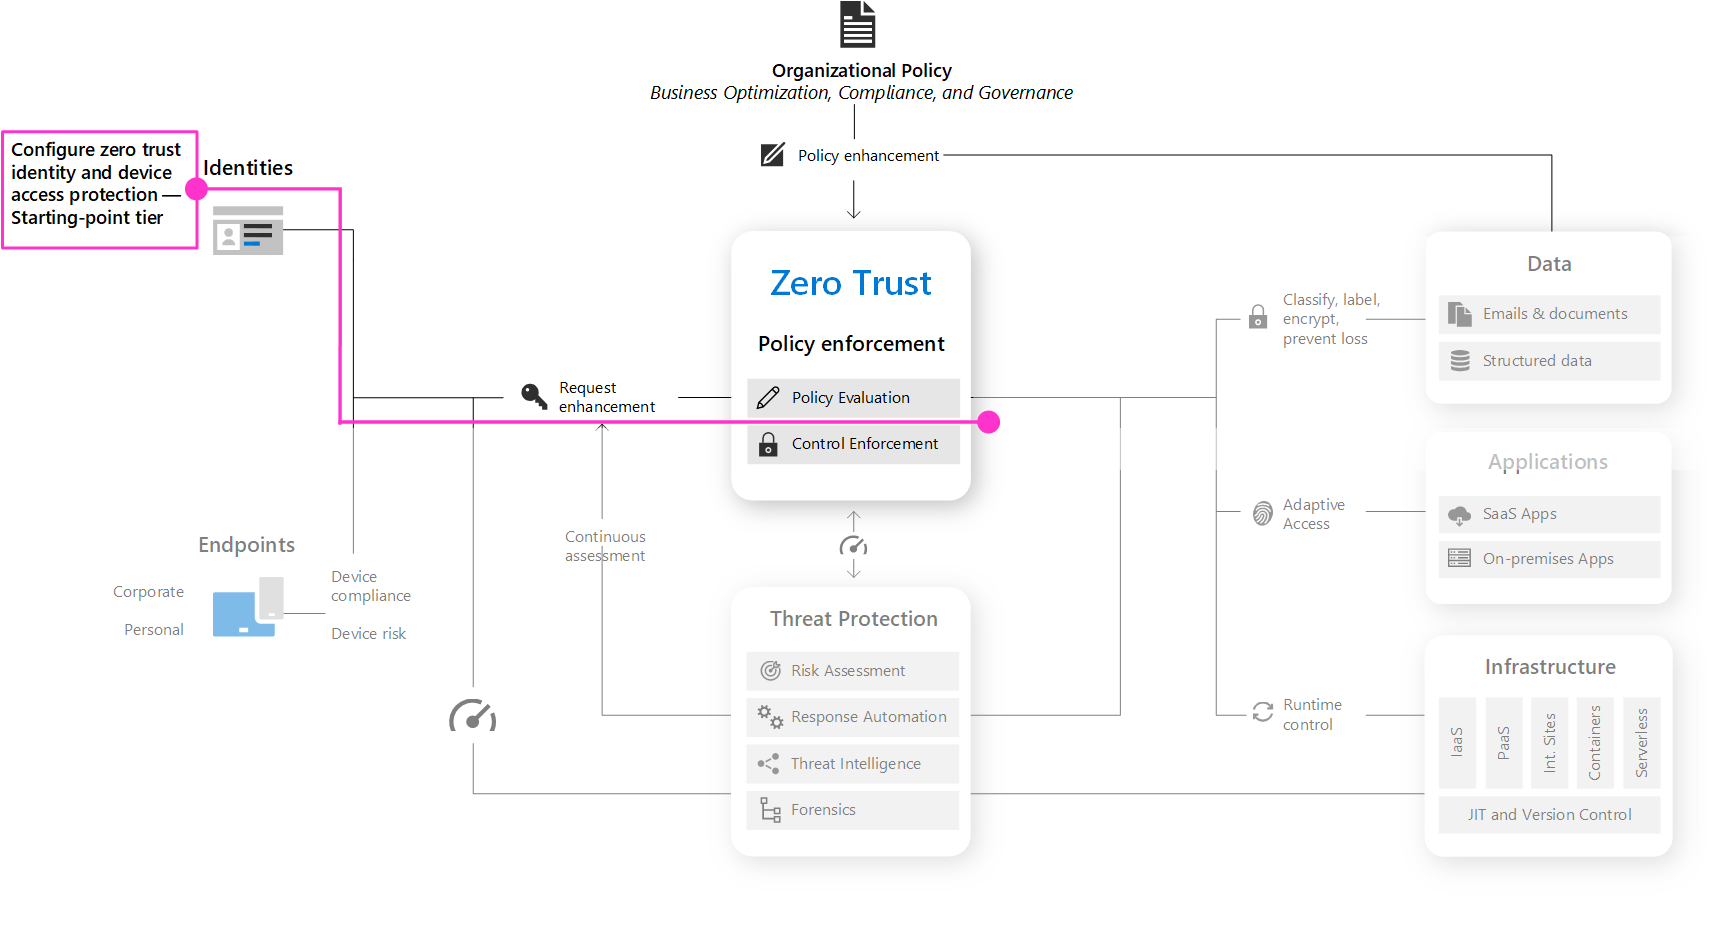 Der Prozess zum Konfigurieren von Zero Trust Identitäts- und Gerätezugriffsschutz